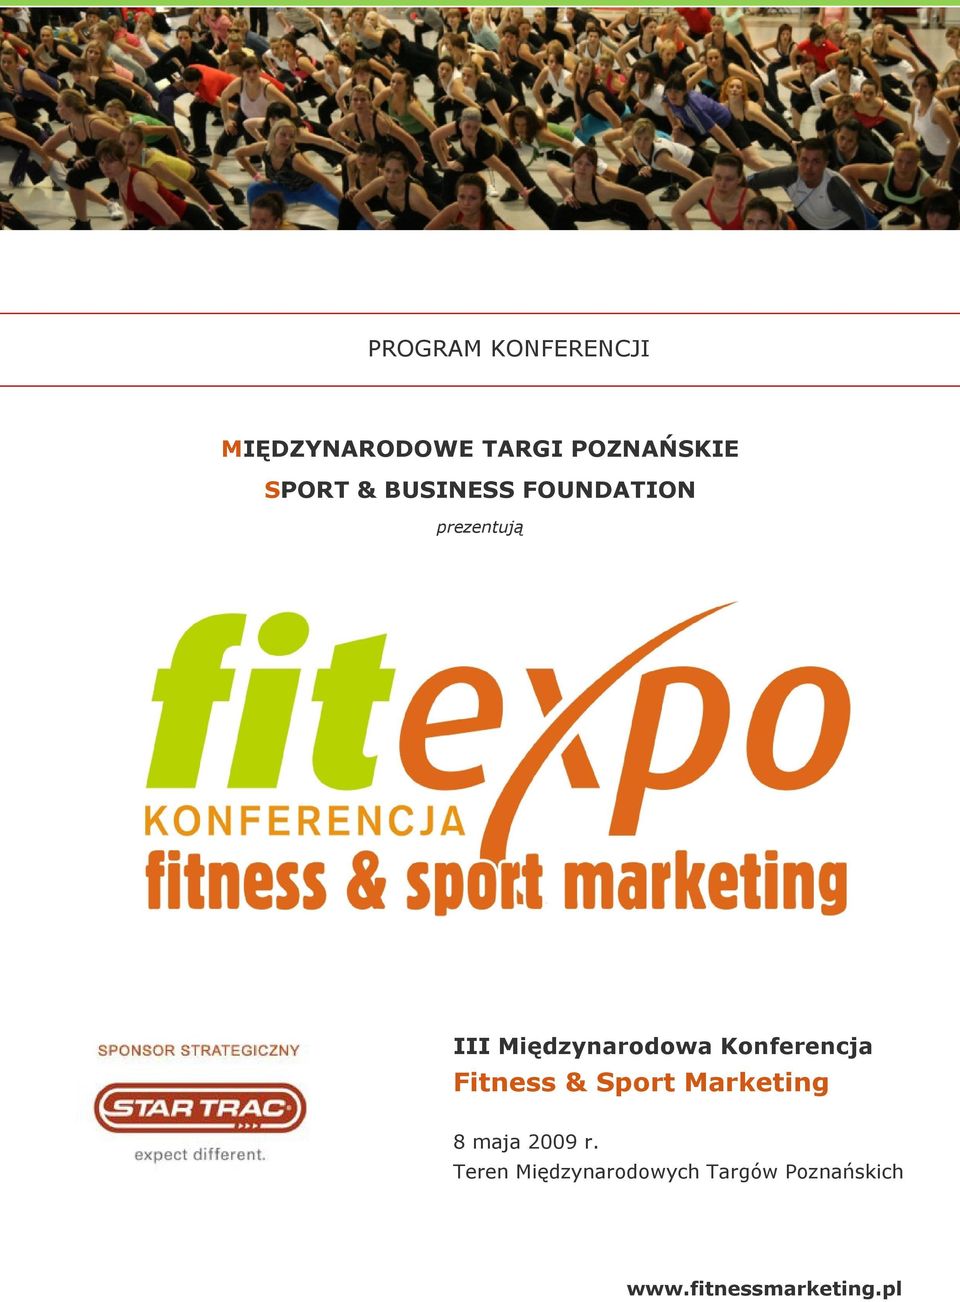 III Międzynarodowa Konferencja Fitness & Sport